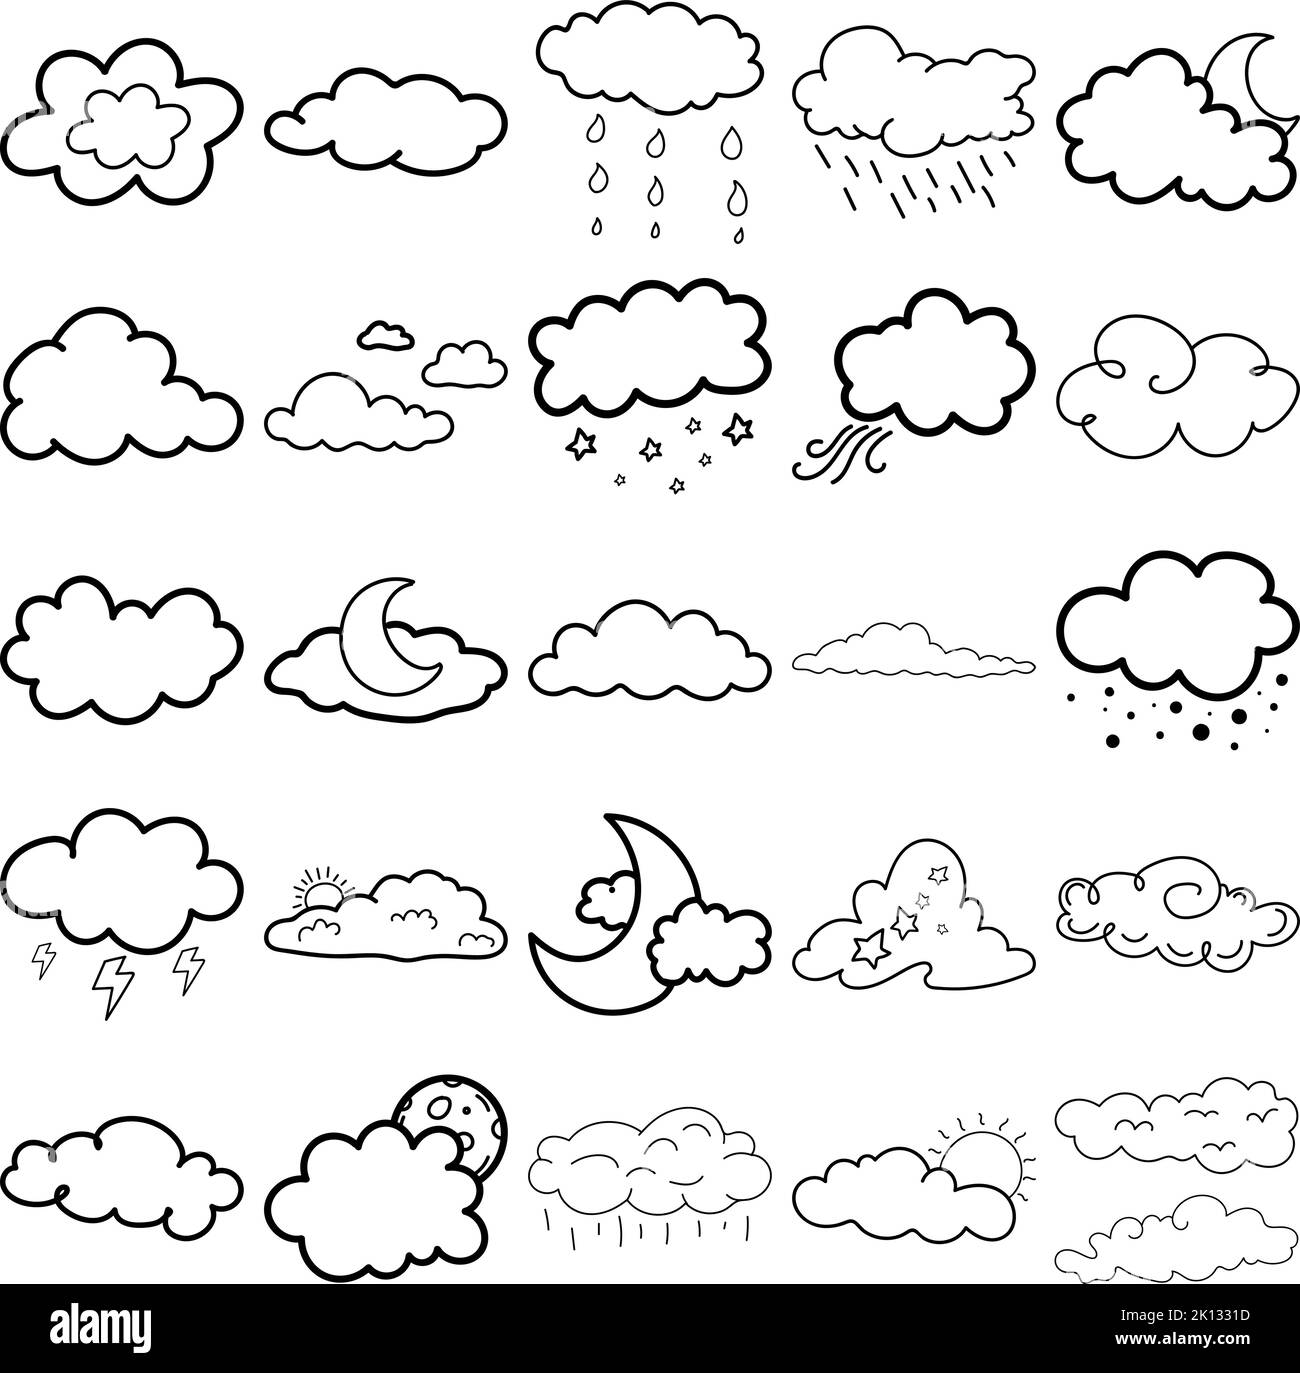 Nuvoloso disegnato a mano Doodle Line Art contorno set contenente nuvole, nuvole, nebbia, nebbia, soffio, smog, fumo, vapore, vapore, velo, bilow, dimmness, film, nebbia Illustrazione Vettoriale